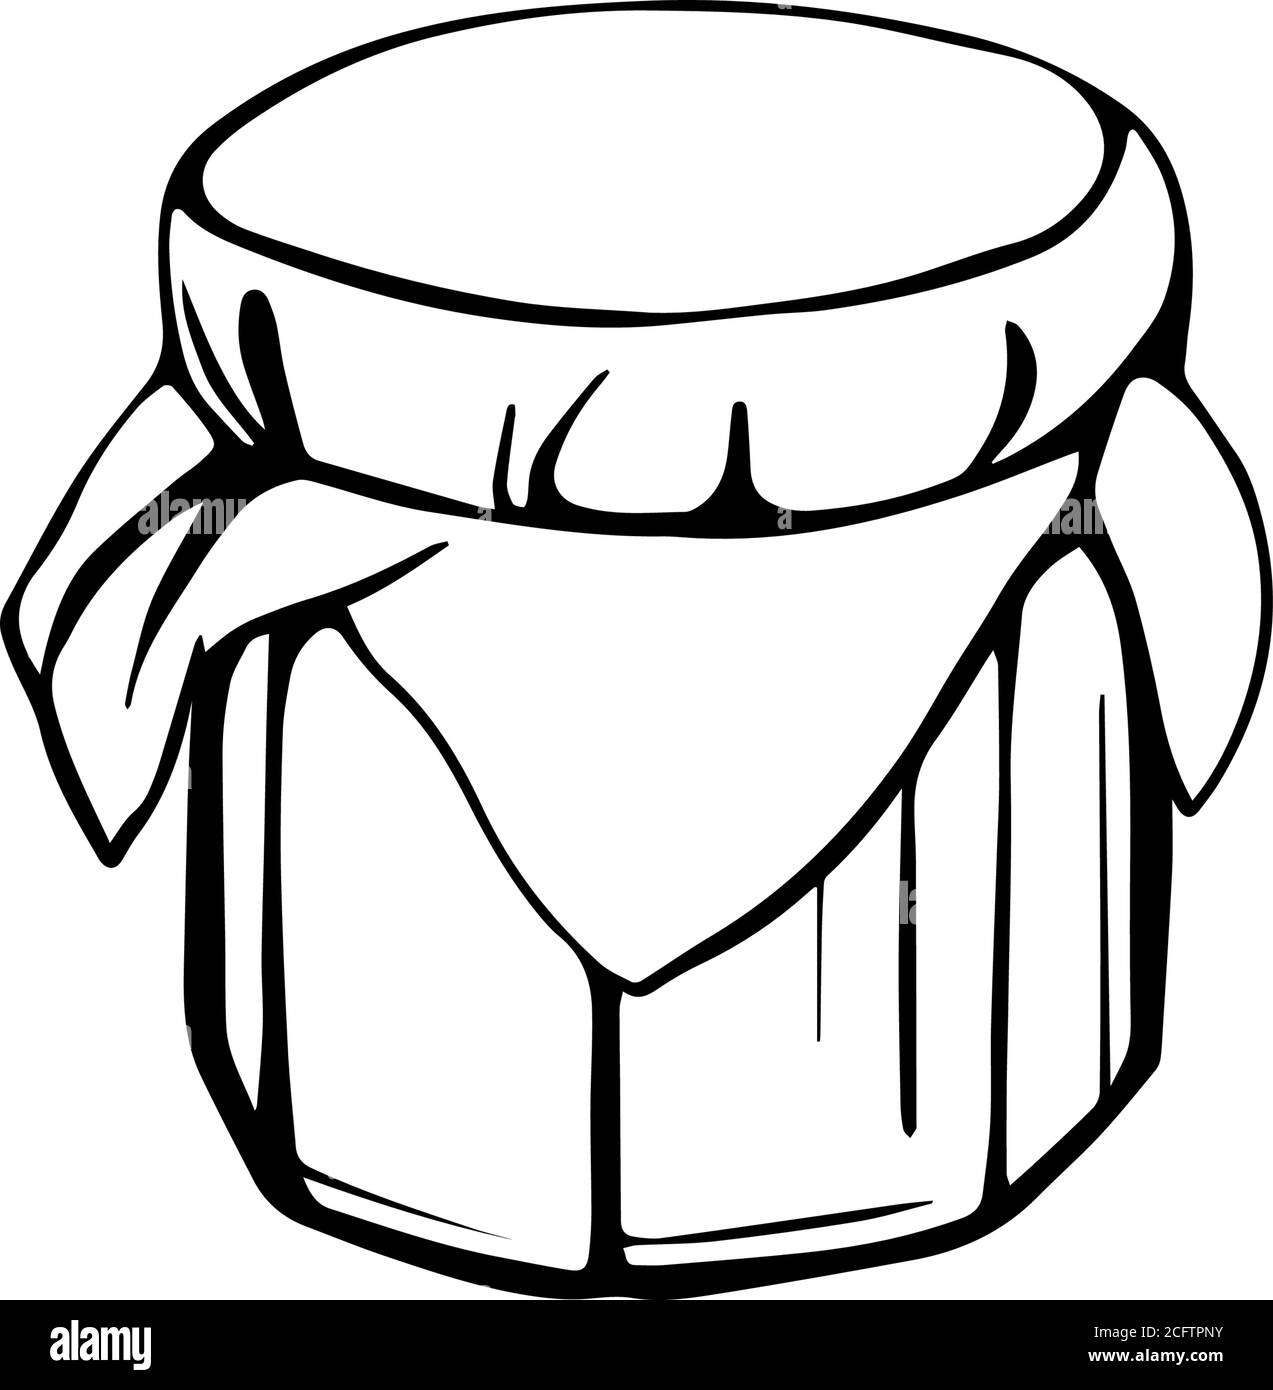 Un vaso di miele o marmellata, miele di api isolato Illustrazione Vettoriale